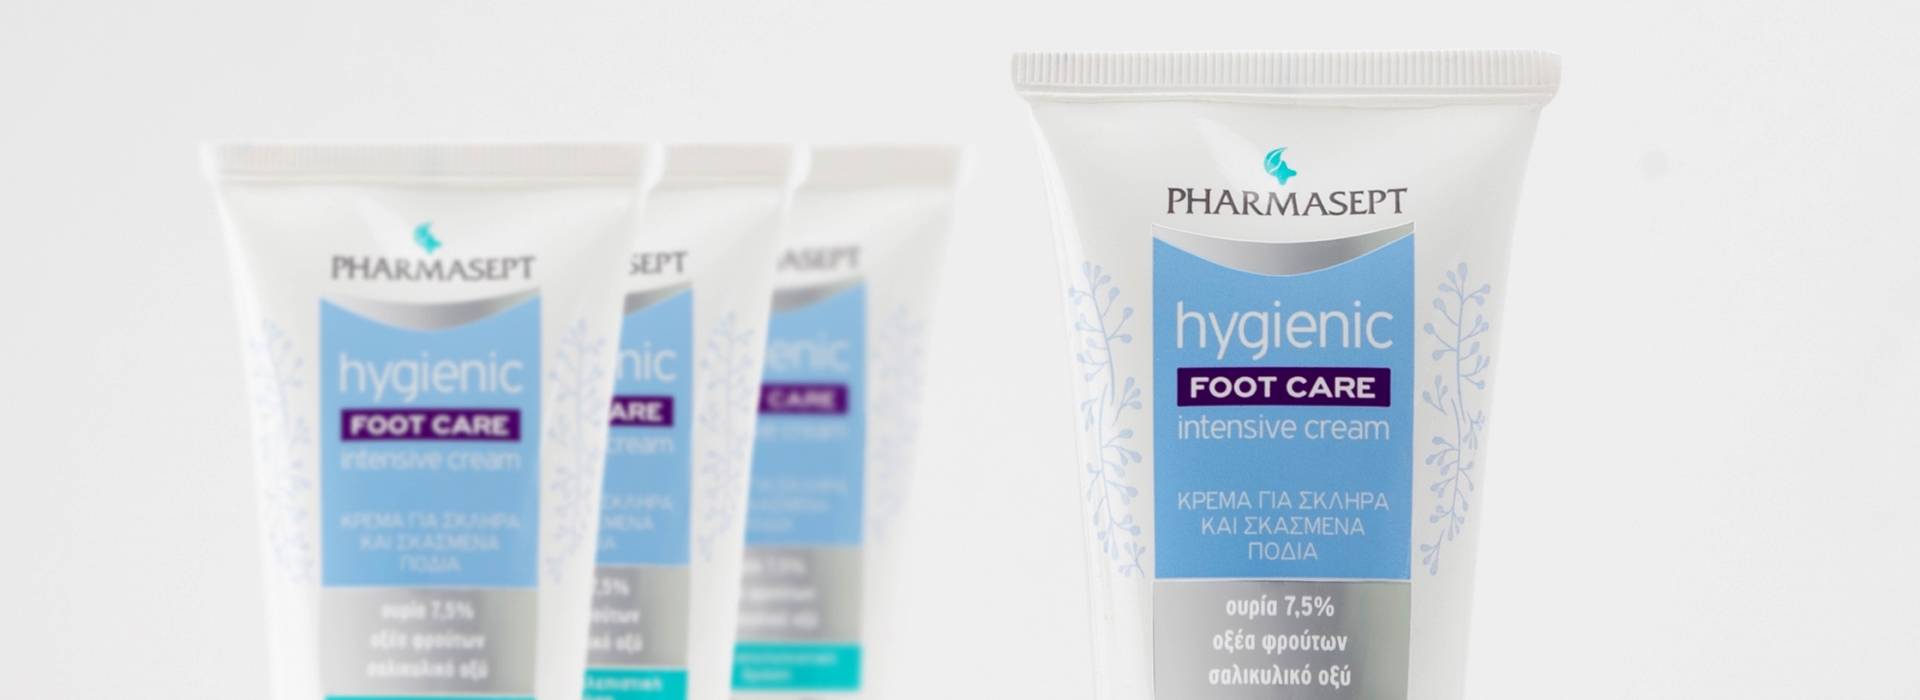 Pharmasept - Foot Care